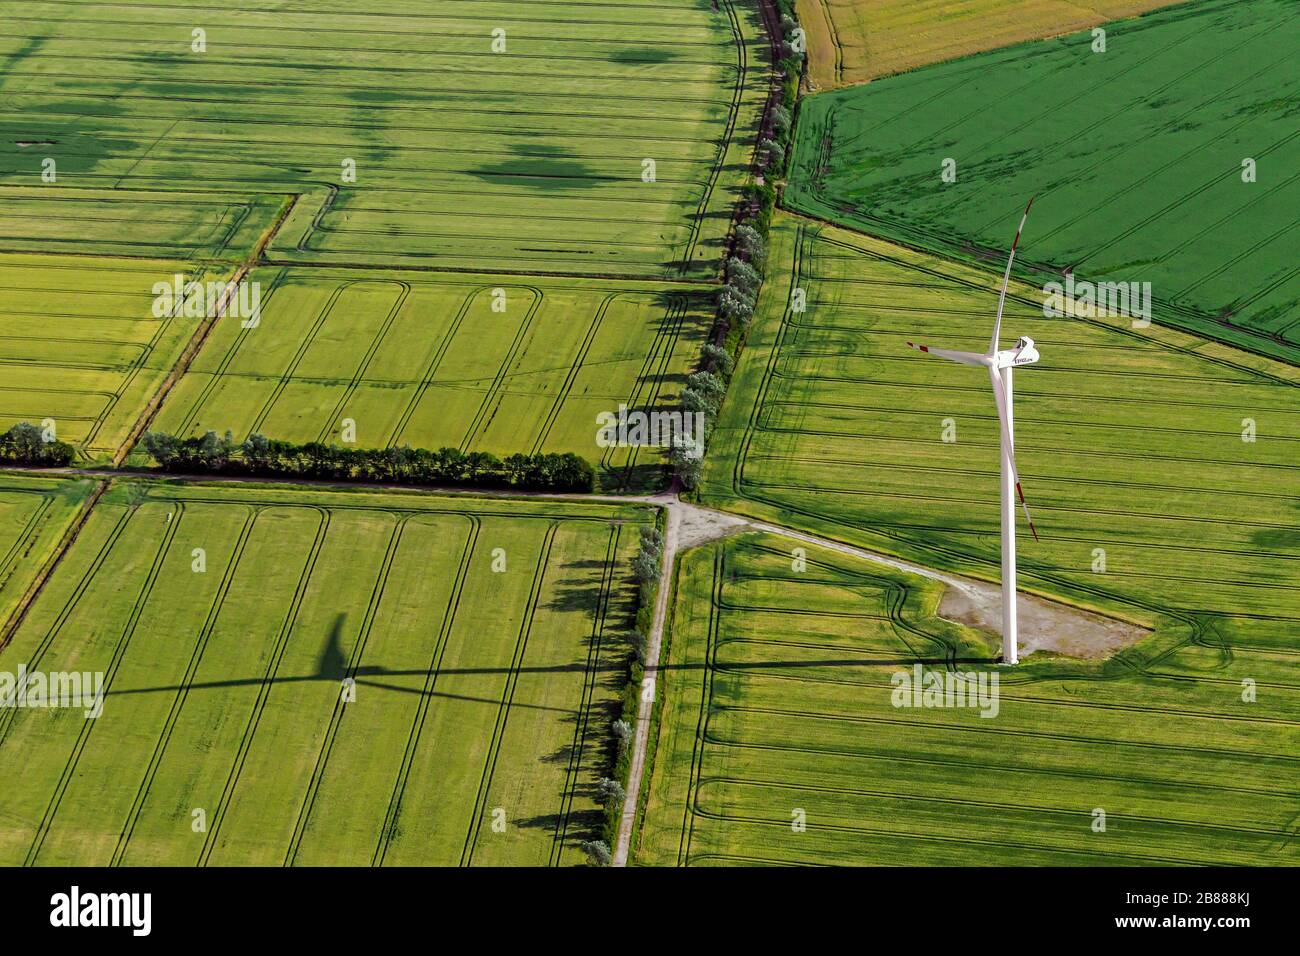 Vue aérienne sur les terres agricoles avec éolienne au milieu de parcelles agricoles / parcelles de terres avec cultures céréalières et champs de blé / champs de maïs en été Banque D'Images